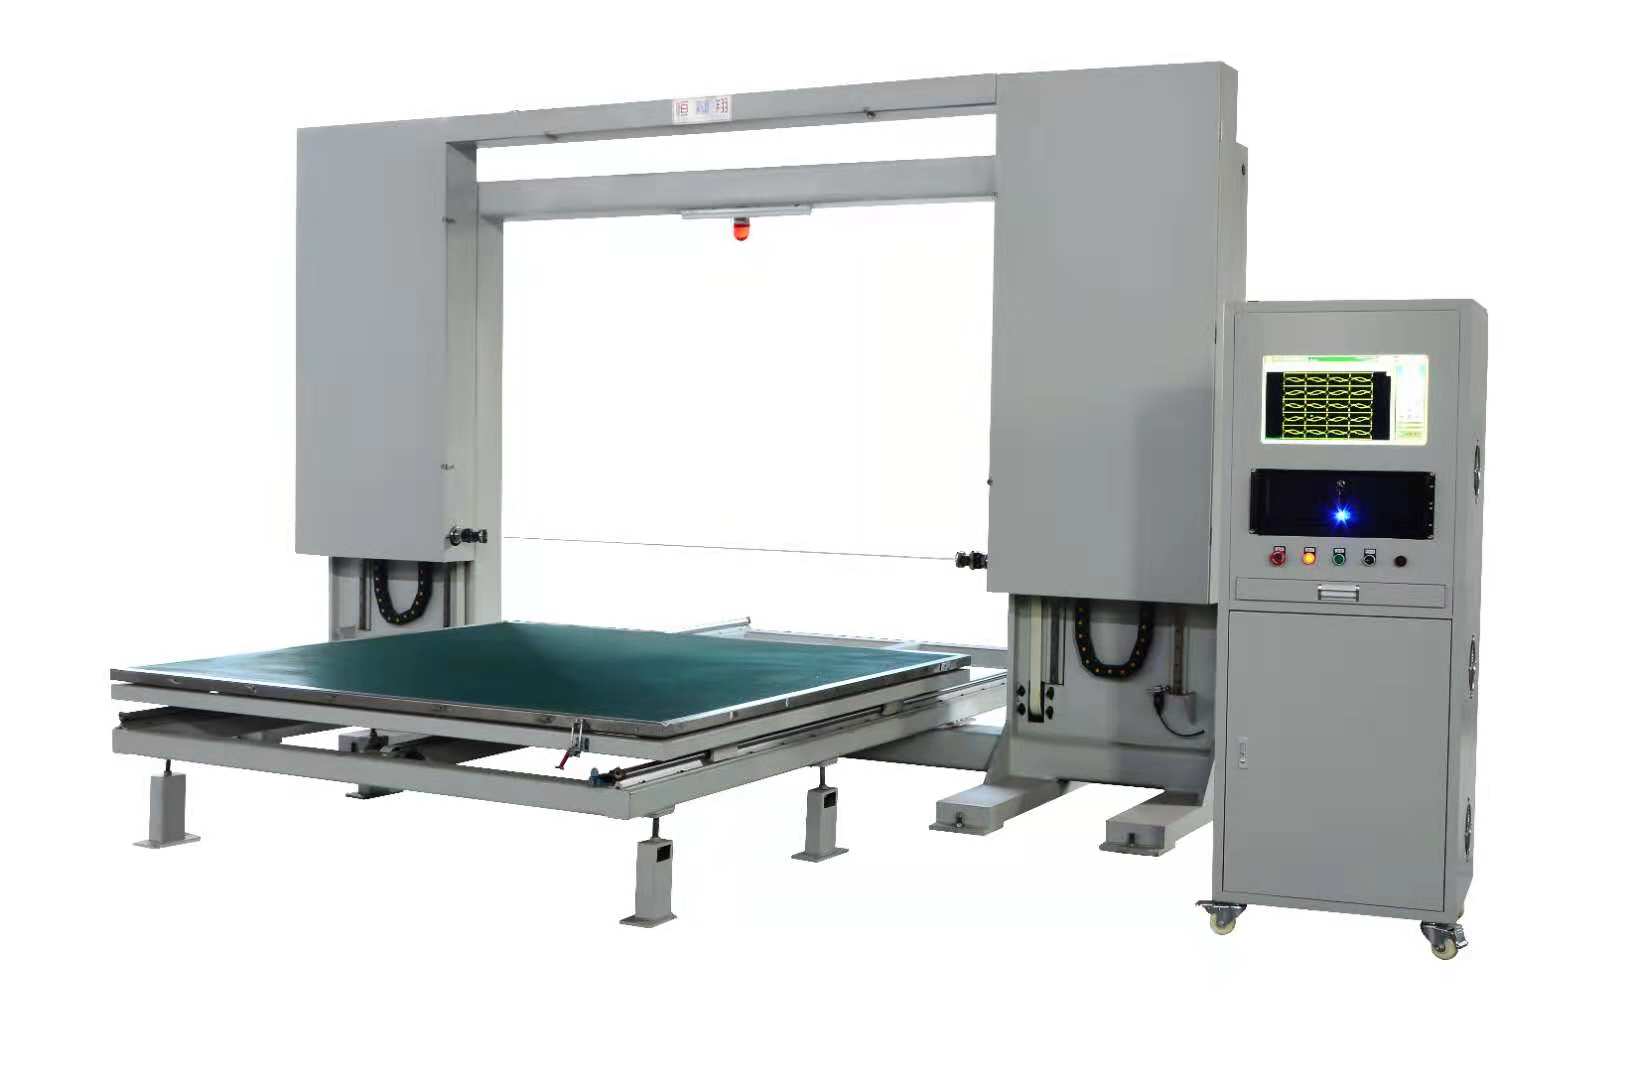 广州裁切机 打样机 振动刀切割机 全自动裁切机设备生产厂家